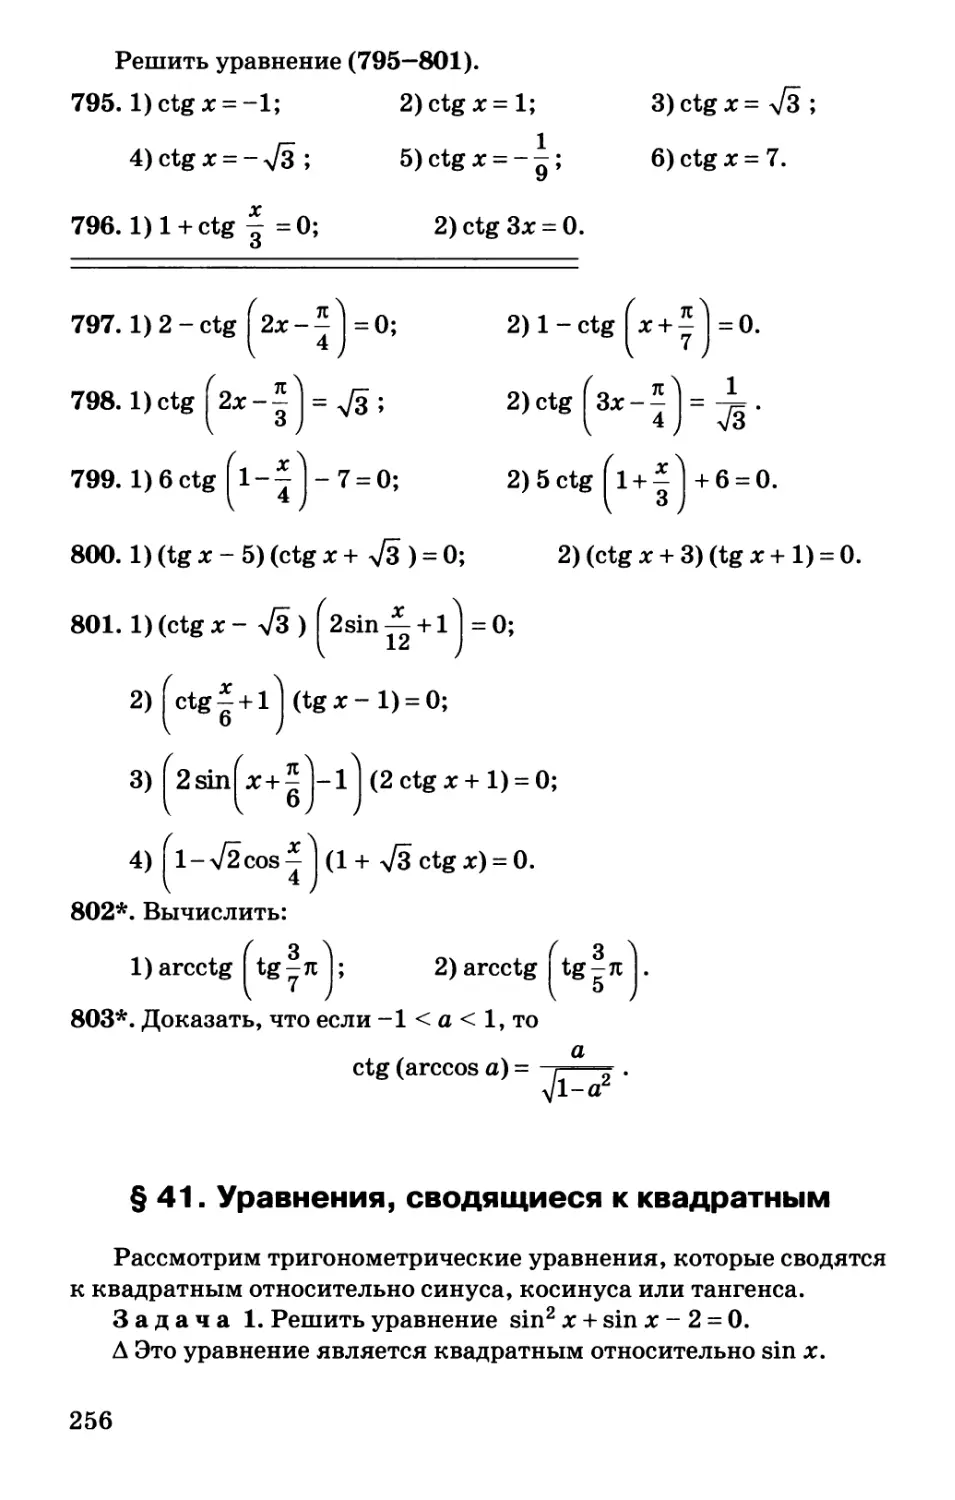 § 41. Уравнения, сводящиеся к квадратным